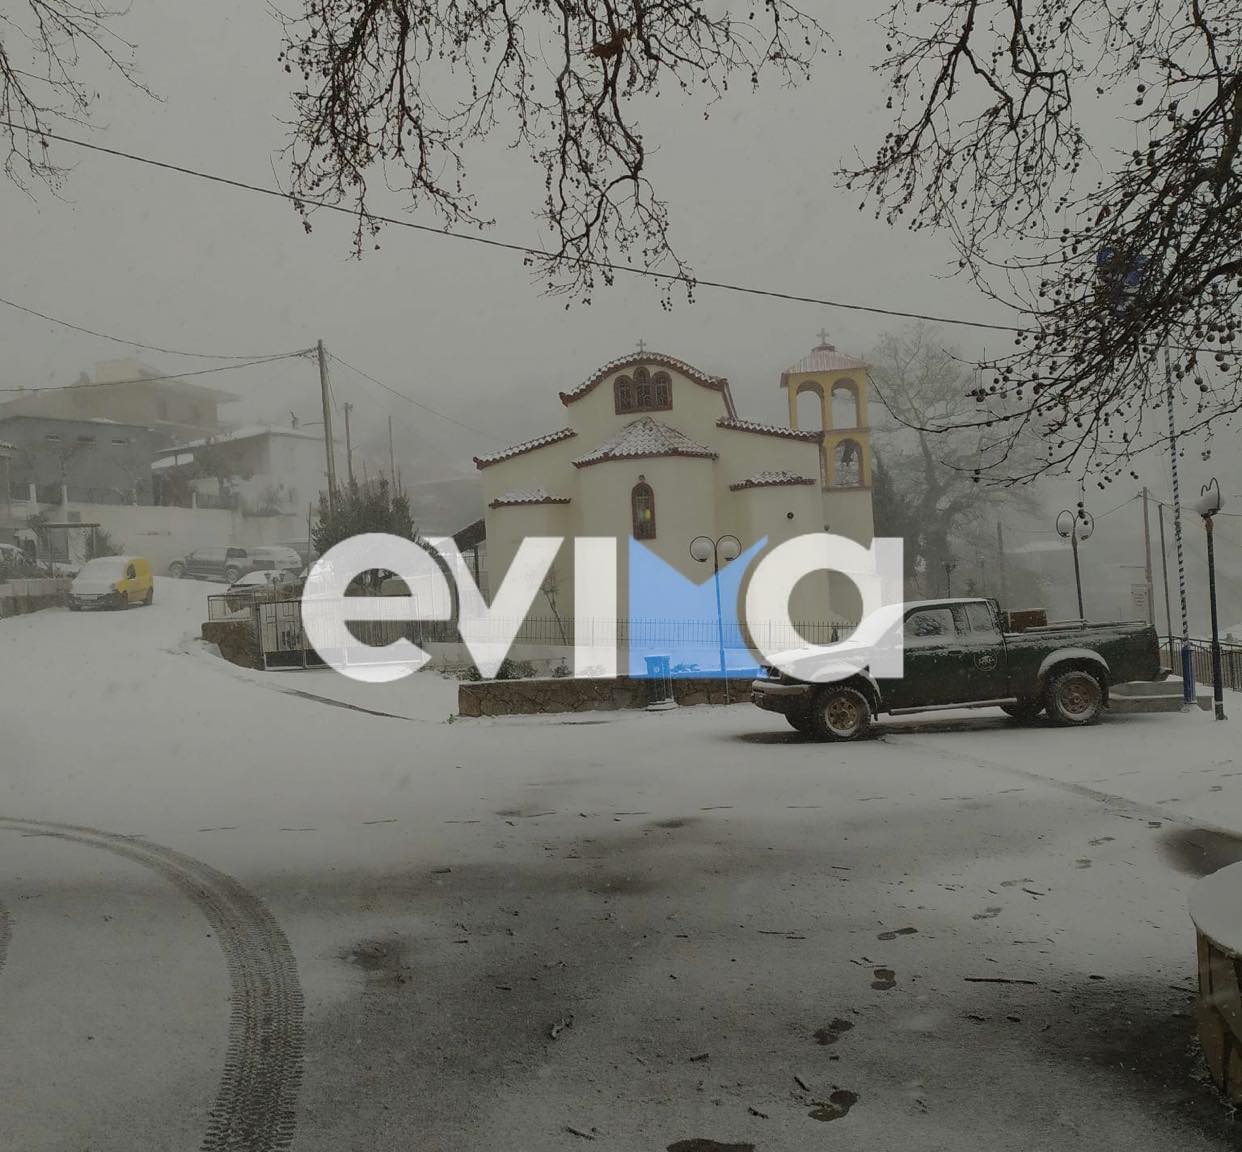 Κακοκαιρία «Μπάρμπαρα»: Χιονοκαταιγίδα στην Εύβοια – Λευκό το τοπίο μέσα σε 5 λεπτά